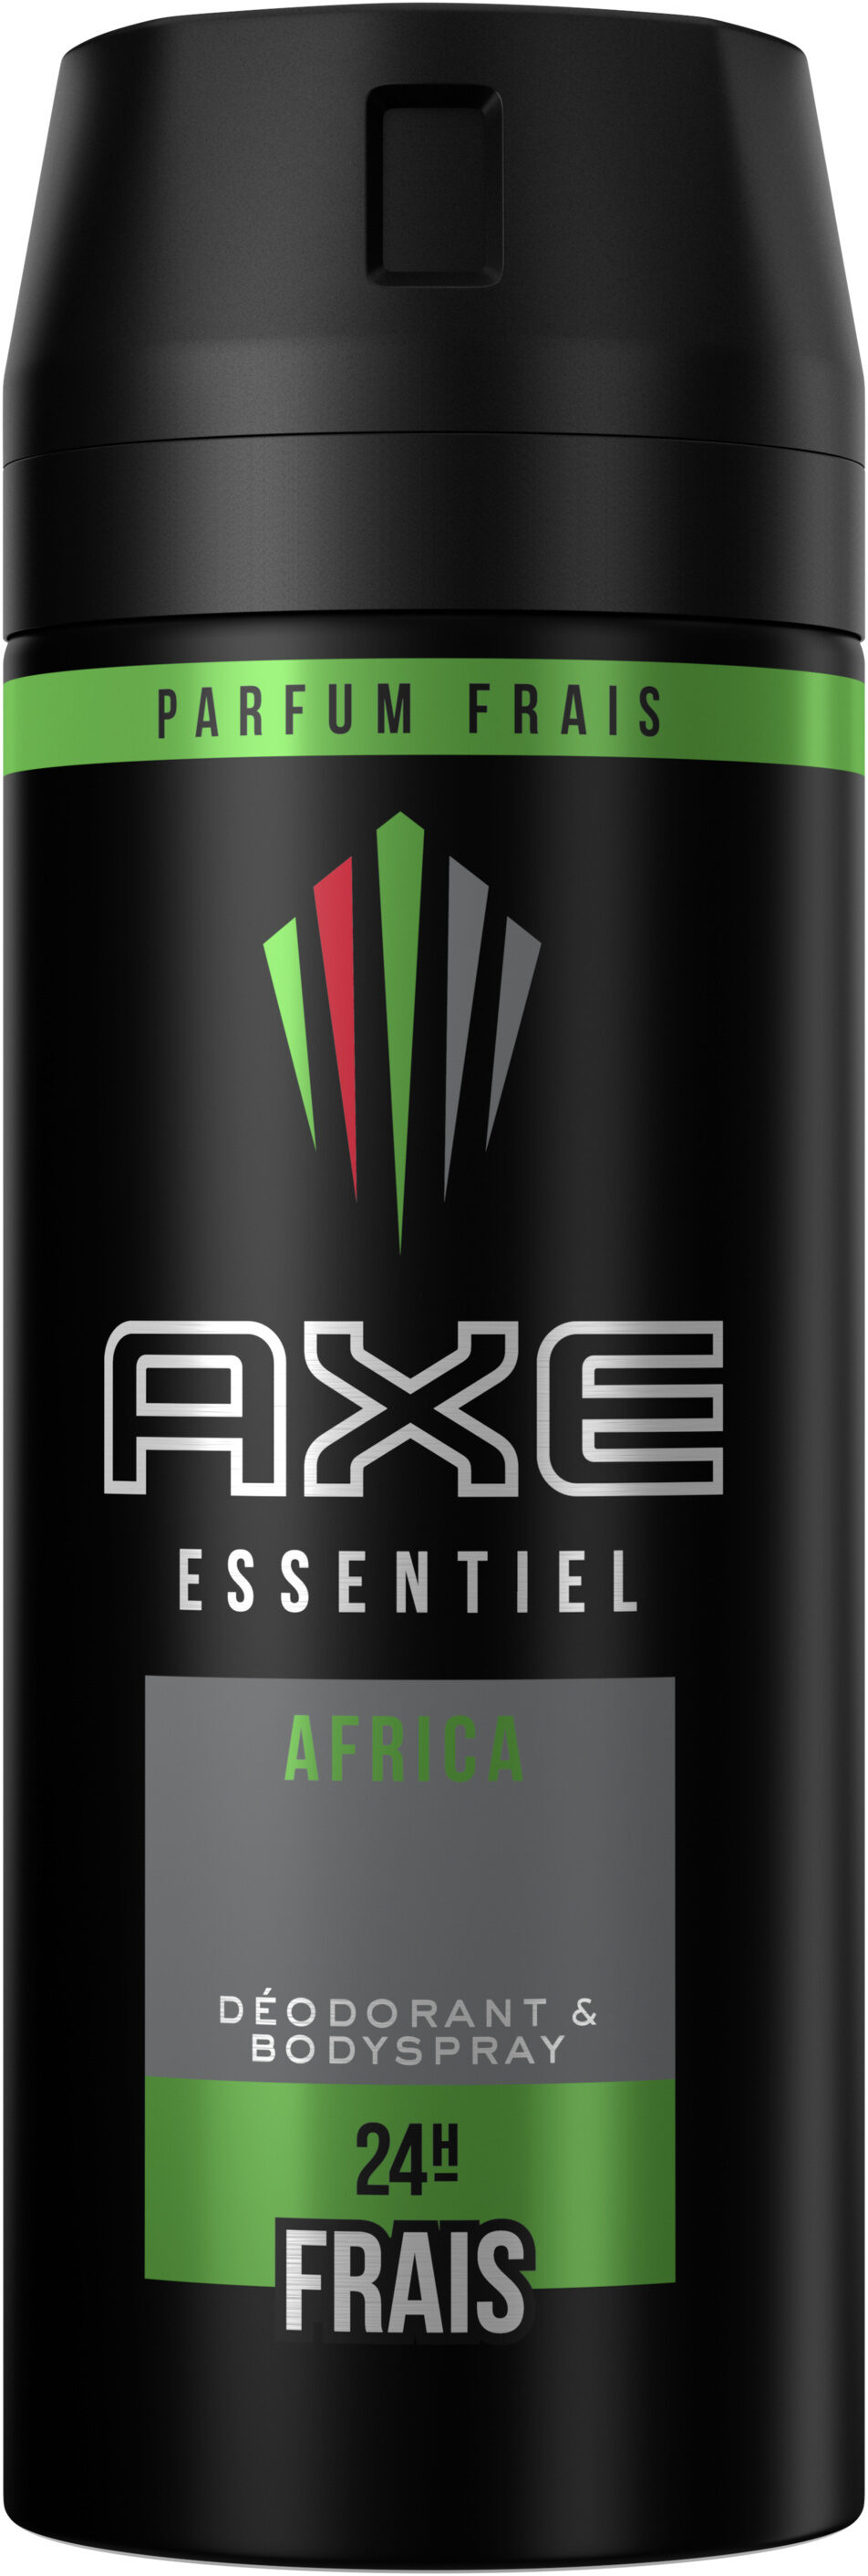 Axe Déodorant Homme Spray Africa 150ml - Product - fr